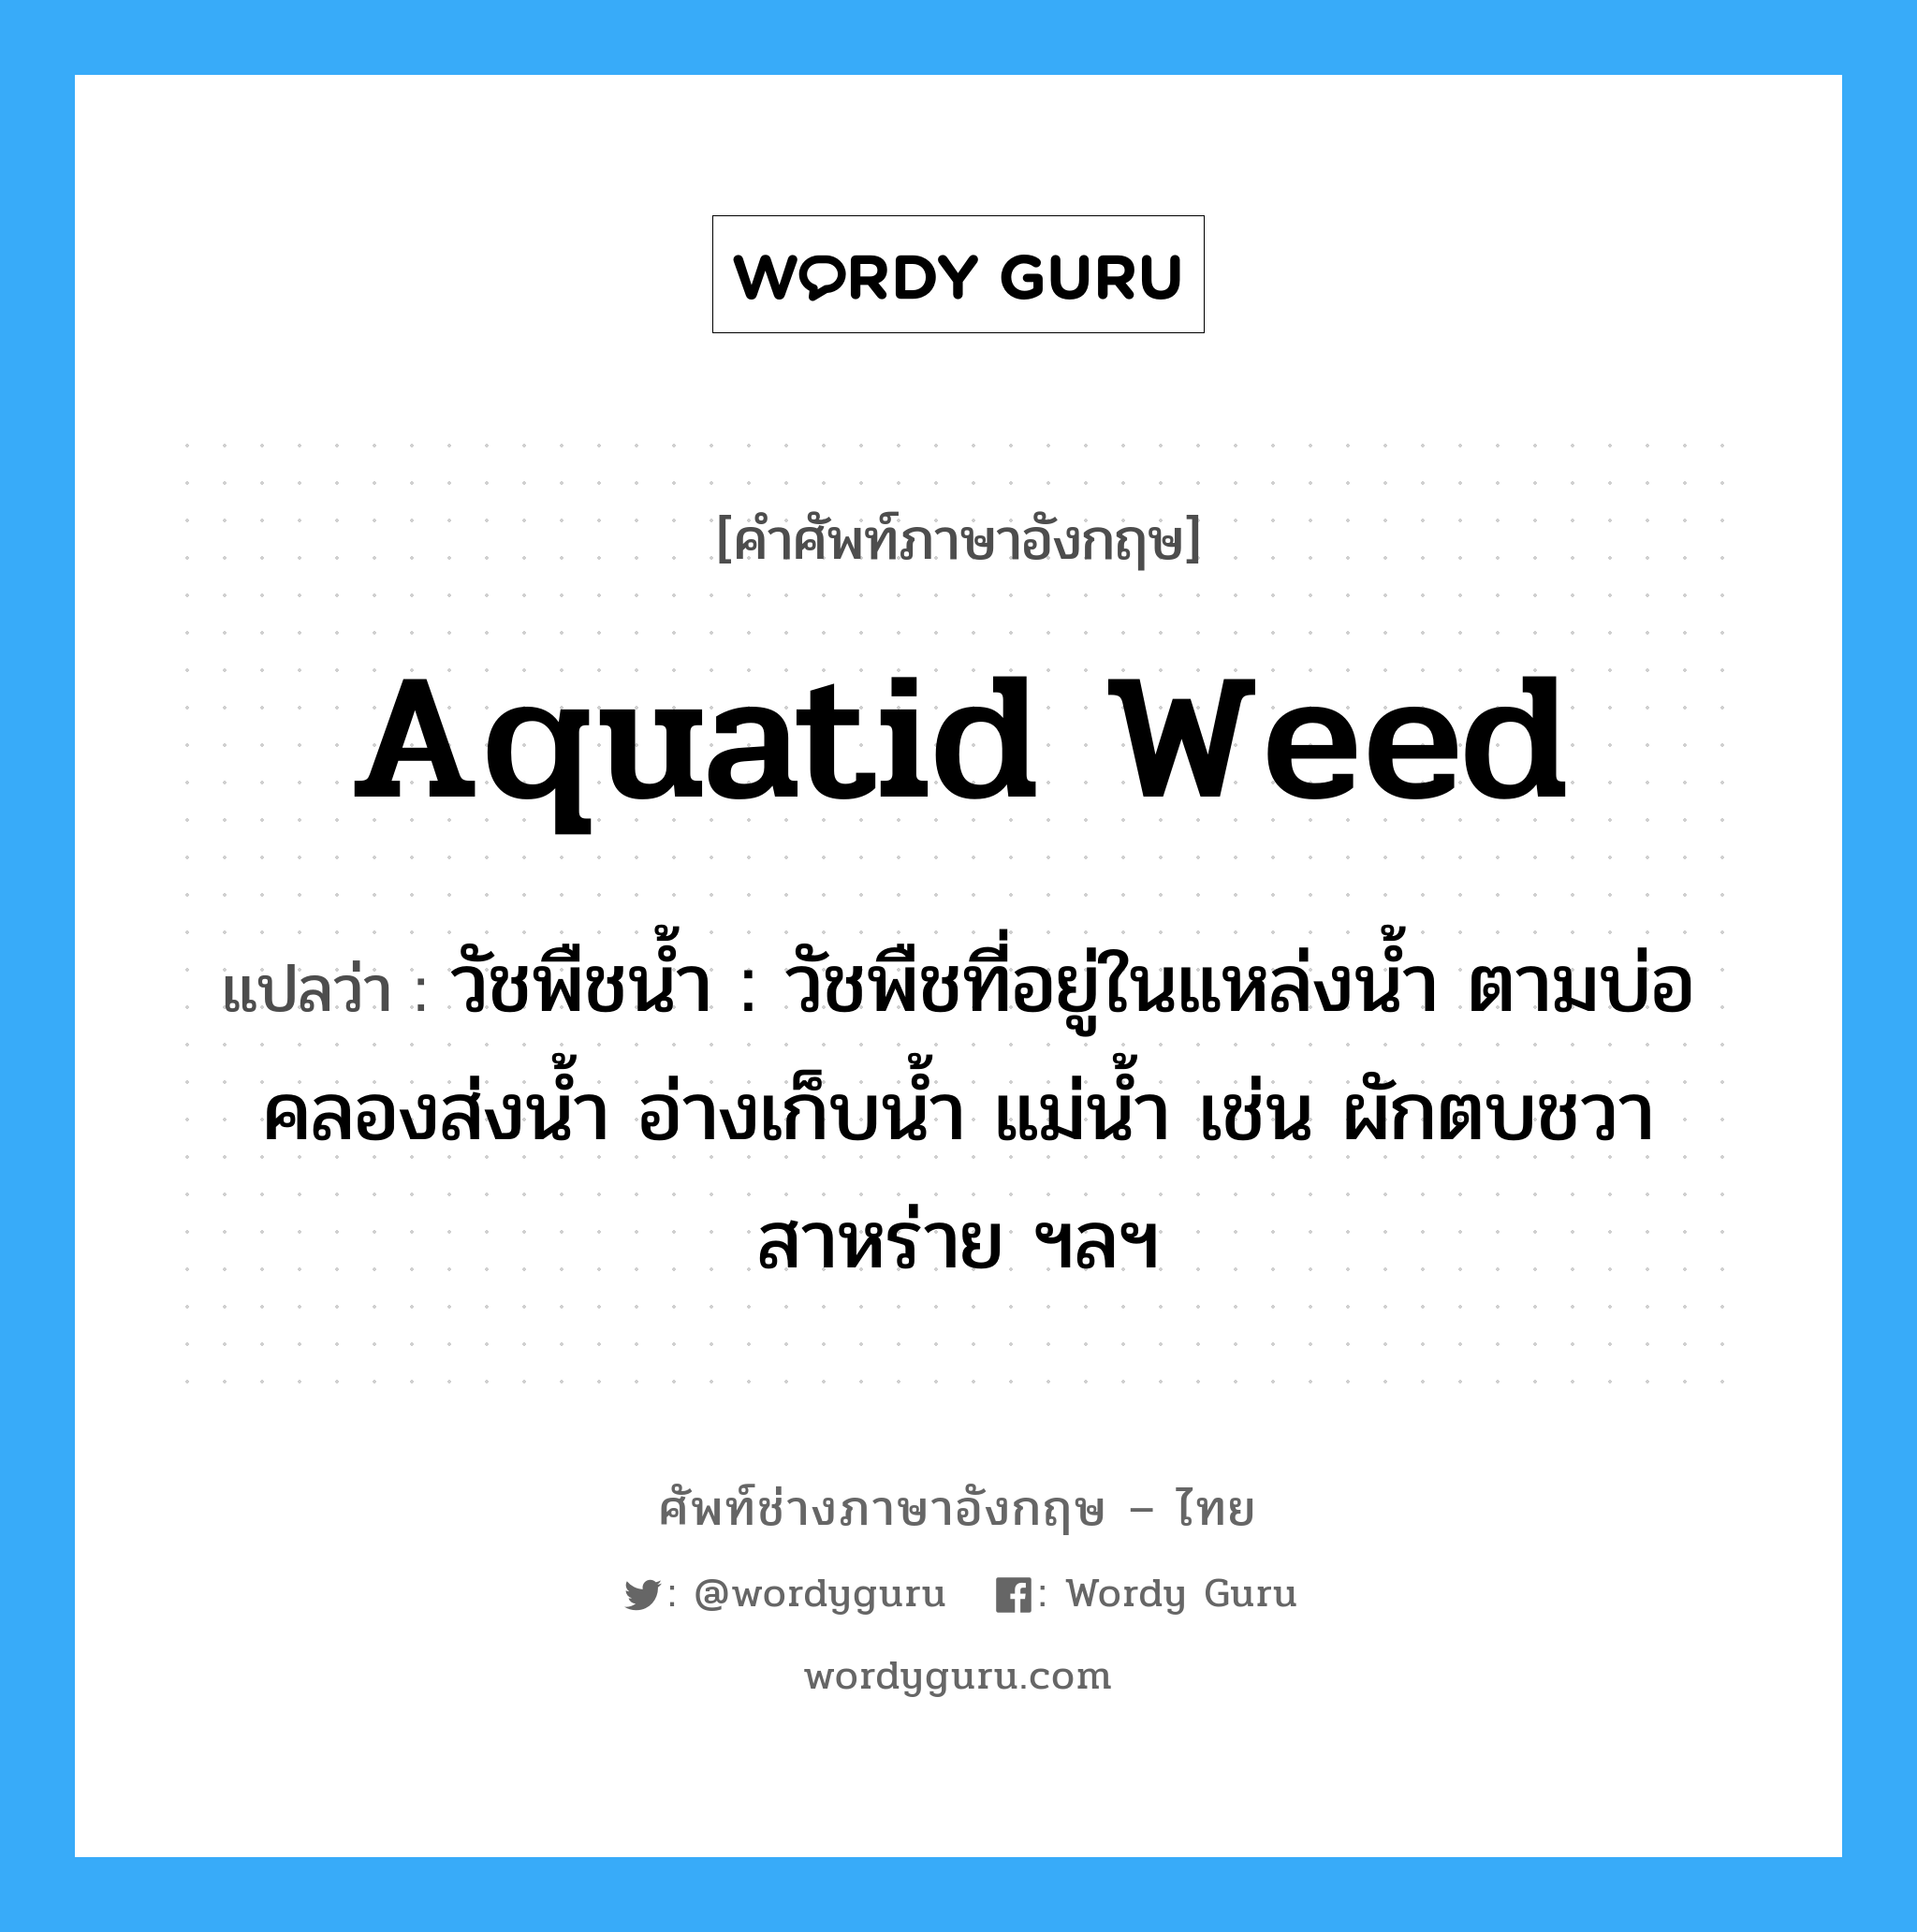 aquatid weed แปลว่า?, คำศัพท์ช่างภาษาอังกฤษ - ไทย aquatid weed คำศัพท์ภาษาอังกฤษ aquatid weed แปลว่า วัชพืชน้ำ : วัชพืชที่อยู่ในแหล่งน้ำ ตามบ่อ คลองส่งน้ำ อ่างเก็บน้ำ แม่น้ำ เช่น ผักตบชวา สาหร่าย ฯลฯ